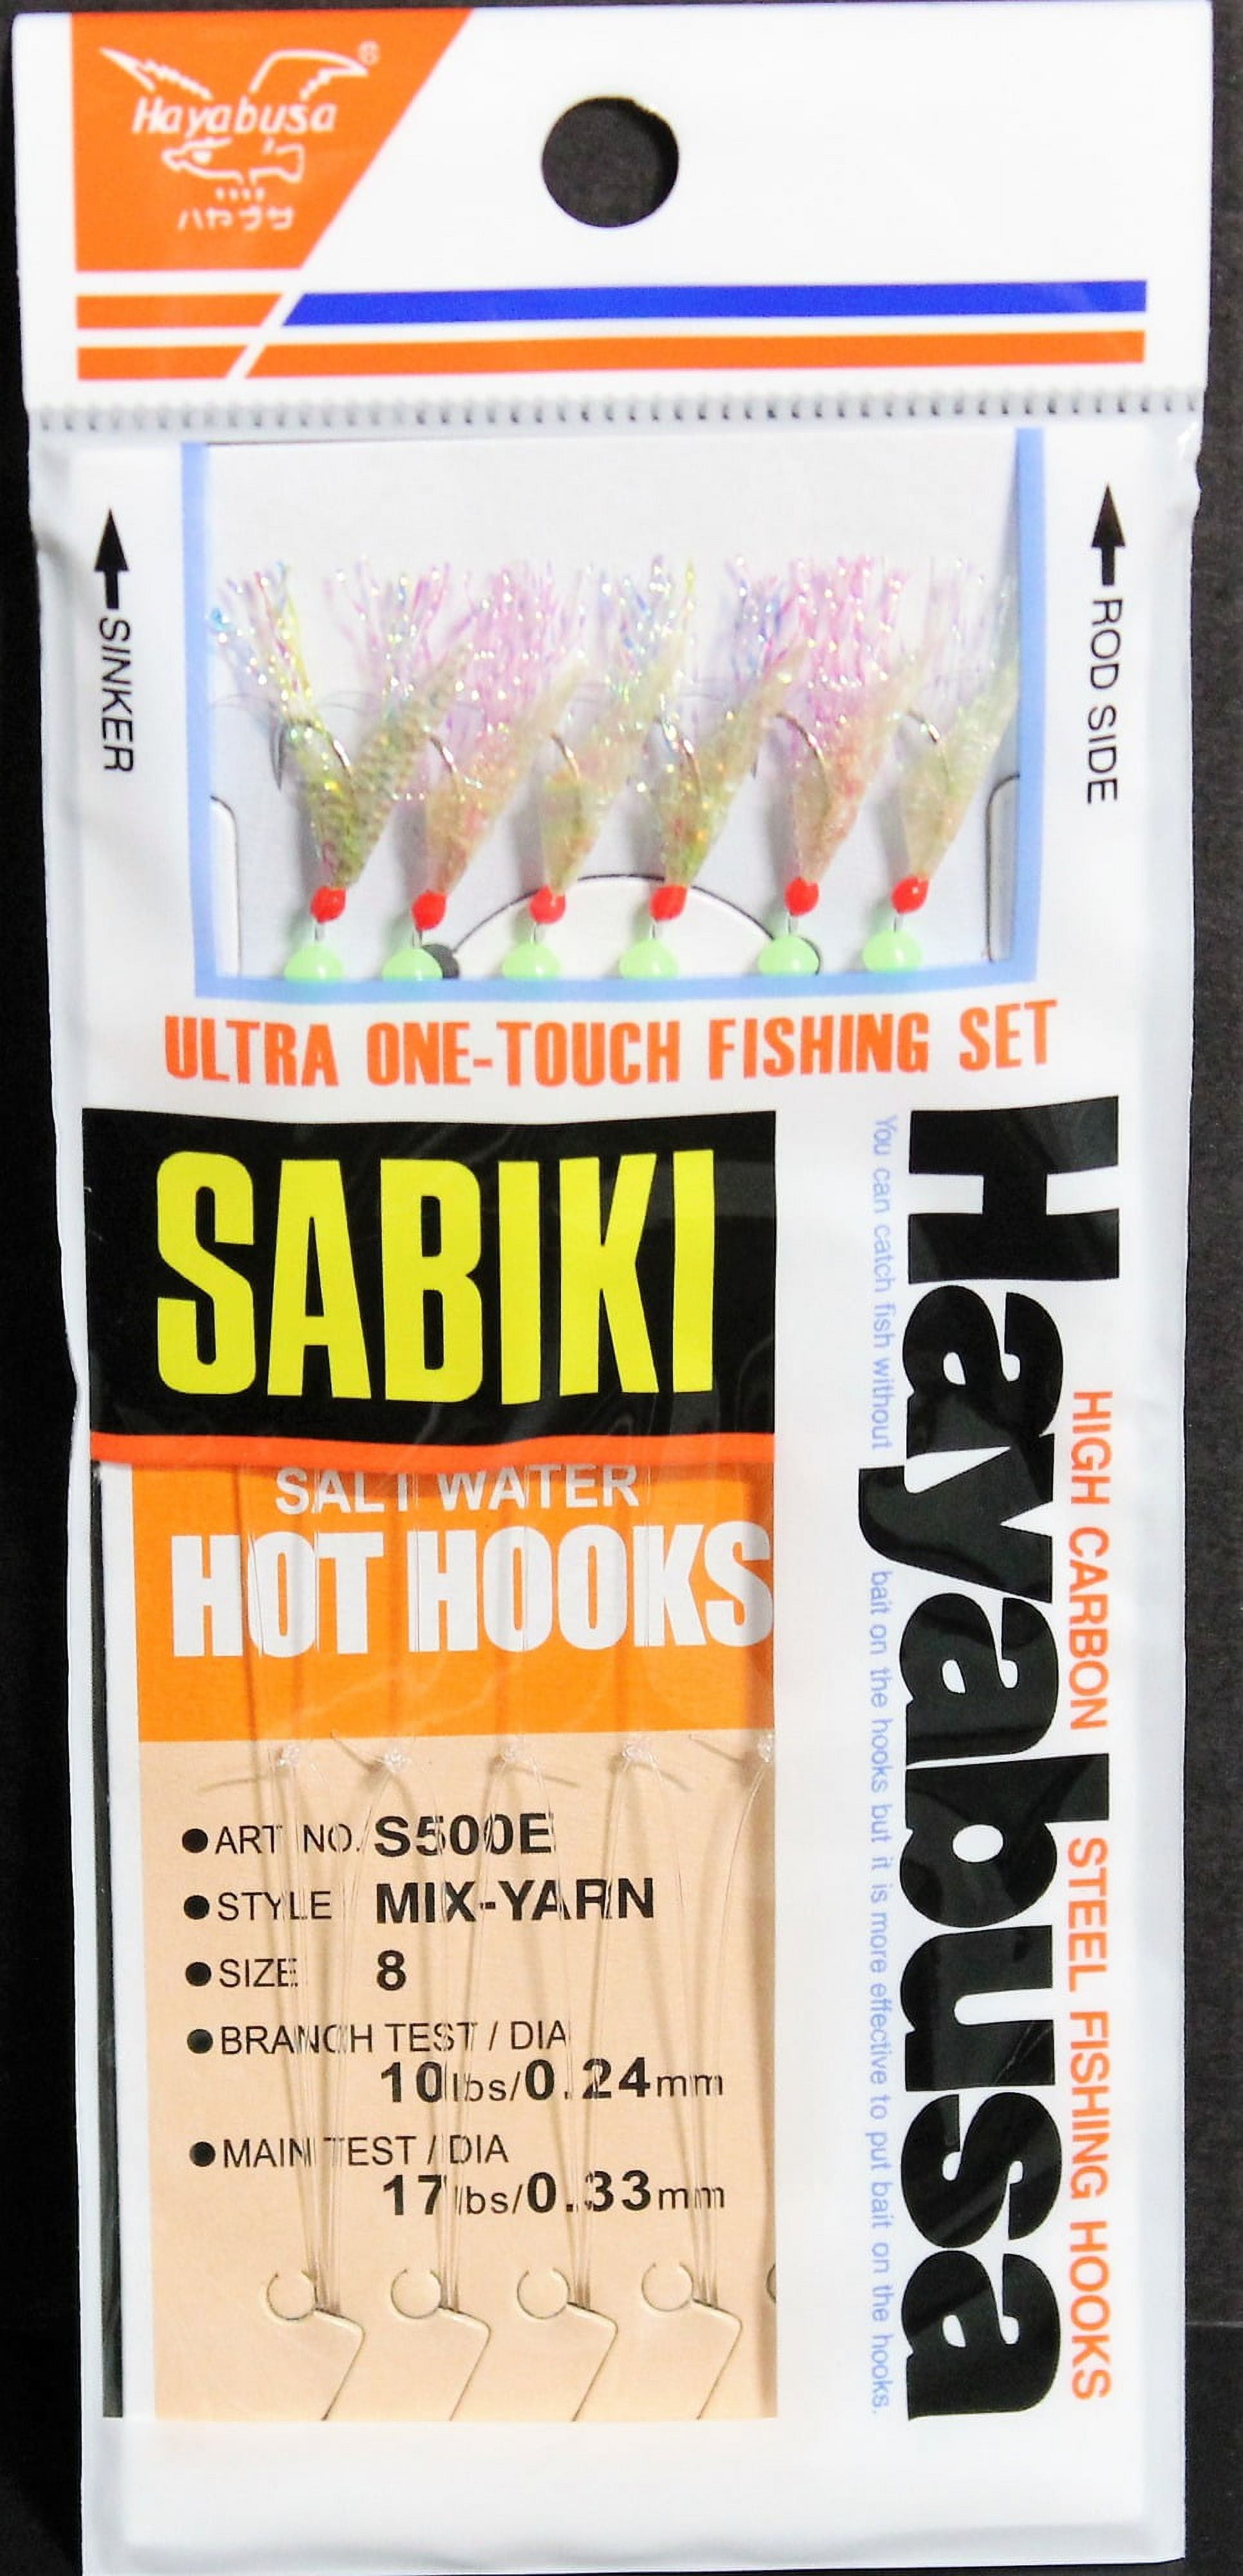 Hayabusa S-500E Mix Yarn Mackerel Fish Skin Aurora Finish Sabiki Set - Size: 8